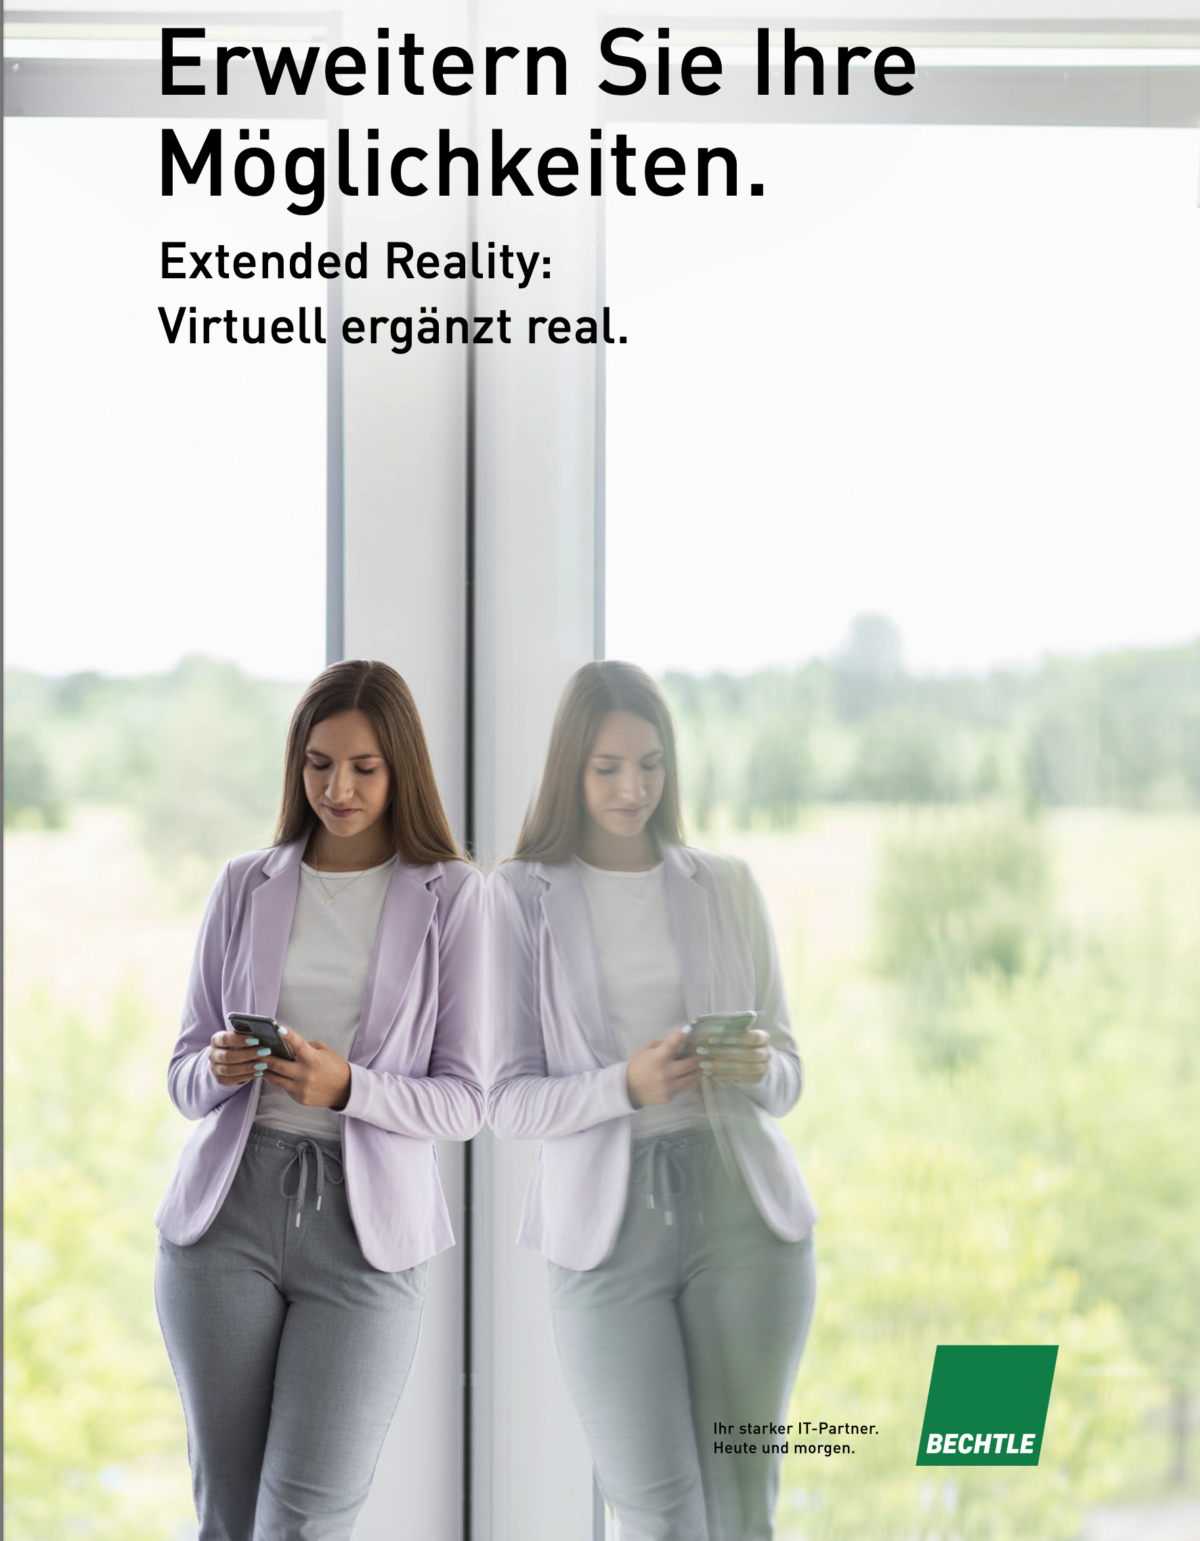 Digitale ZwillingsweltenWhitepaper erklärt Einsatzgebiete von Extended Reality (XR)